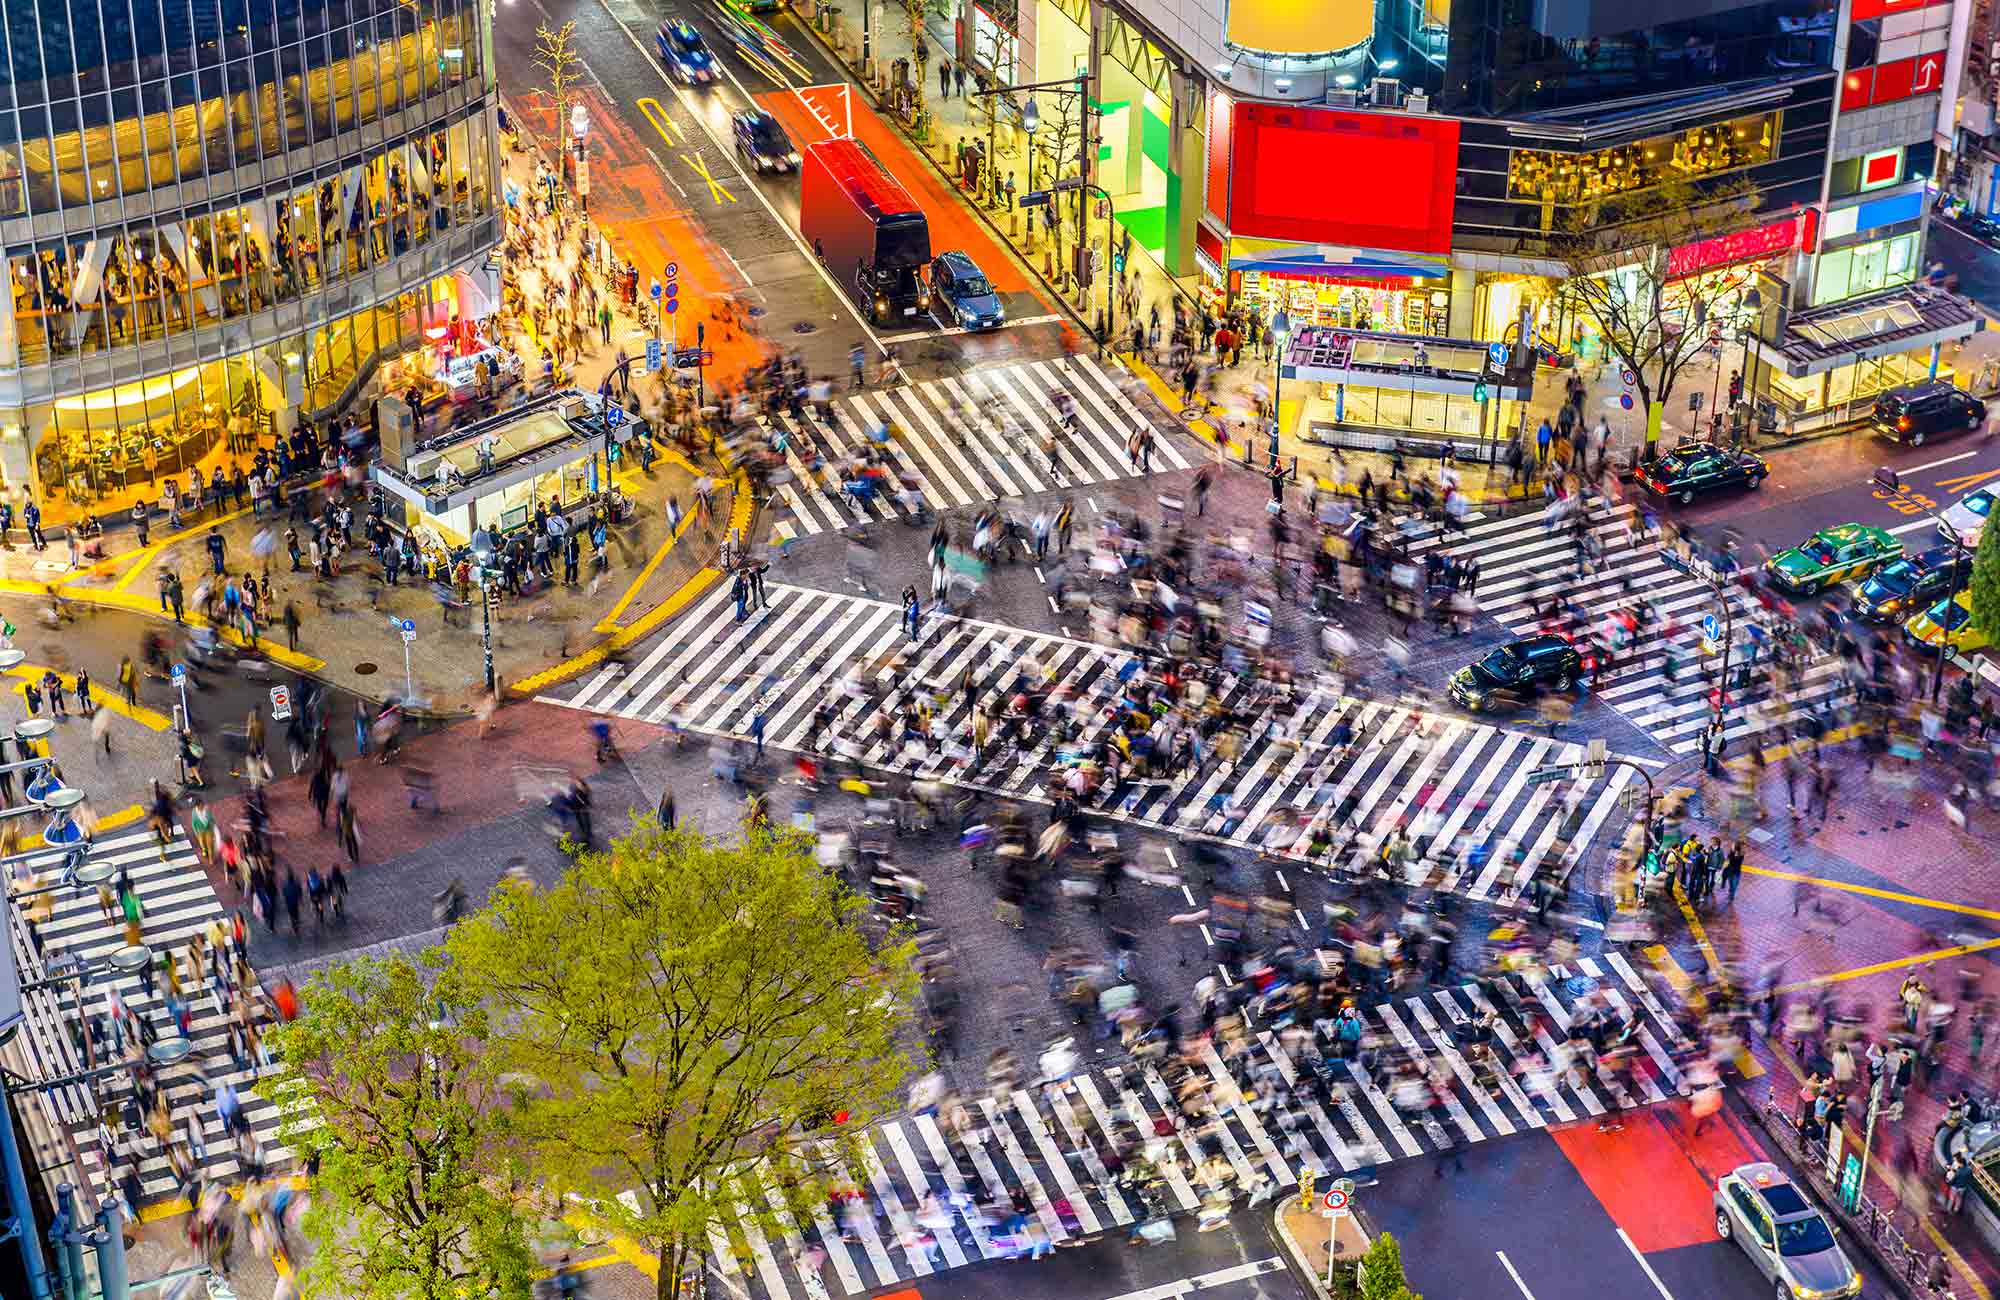 Découvrez notre guide pour se déplacer dans les grandes rues fourmillantes du Japon.